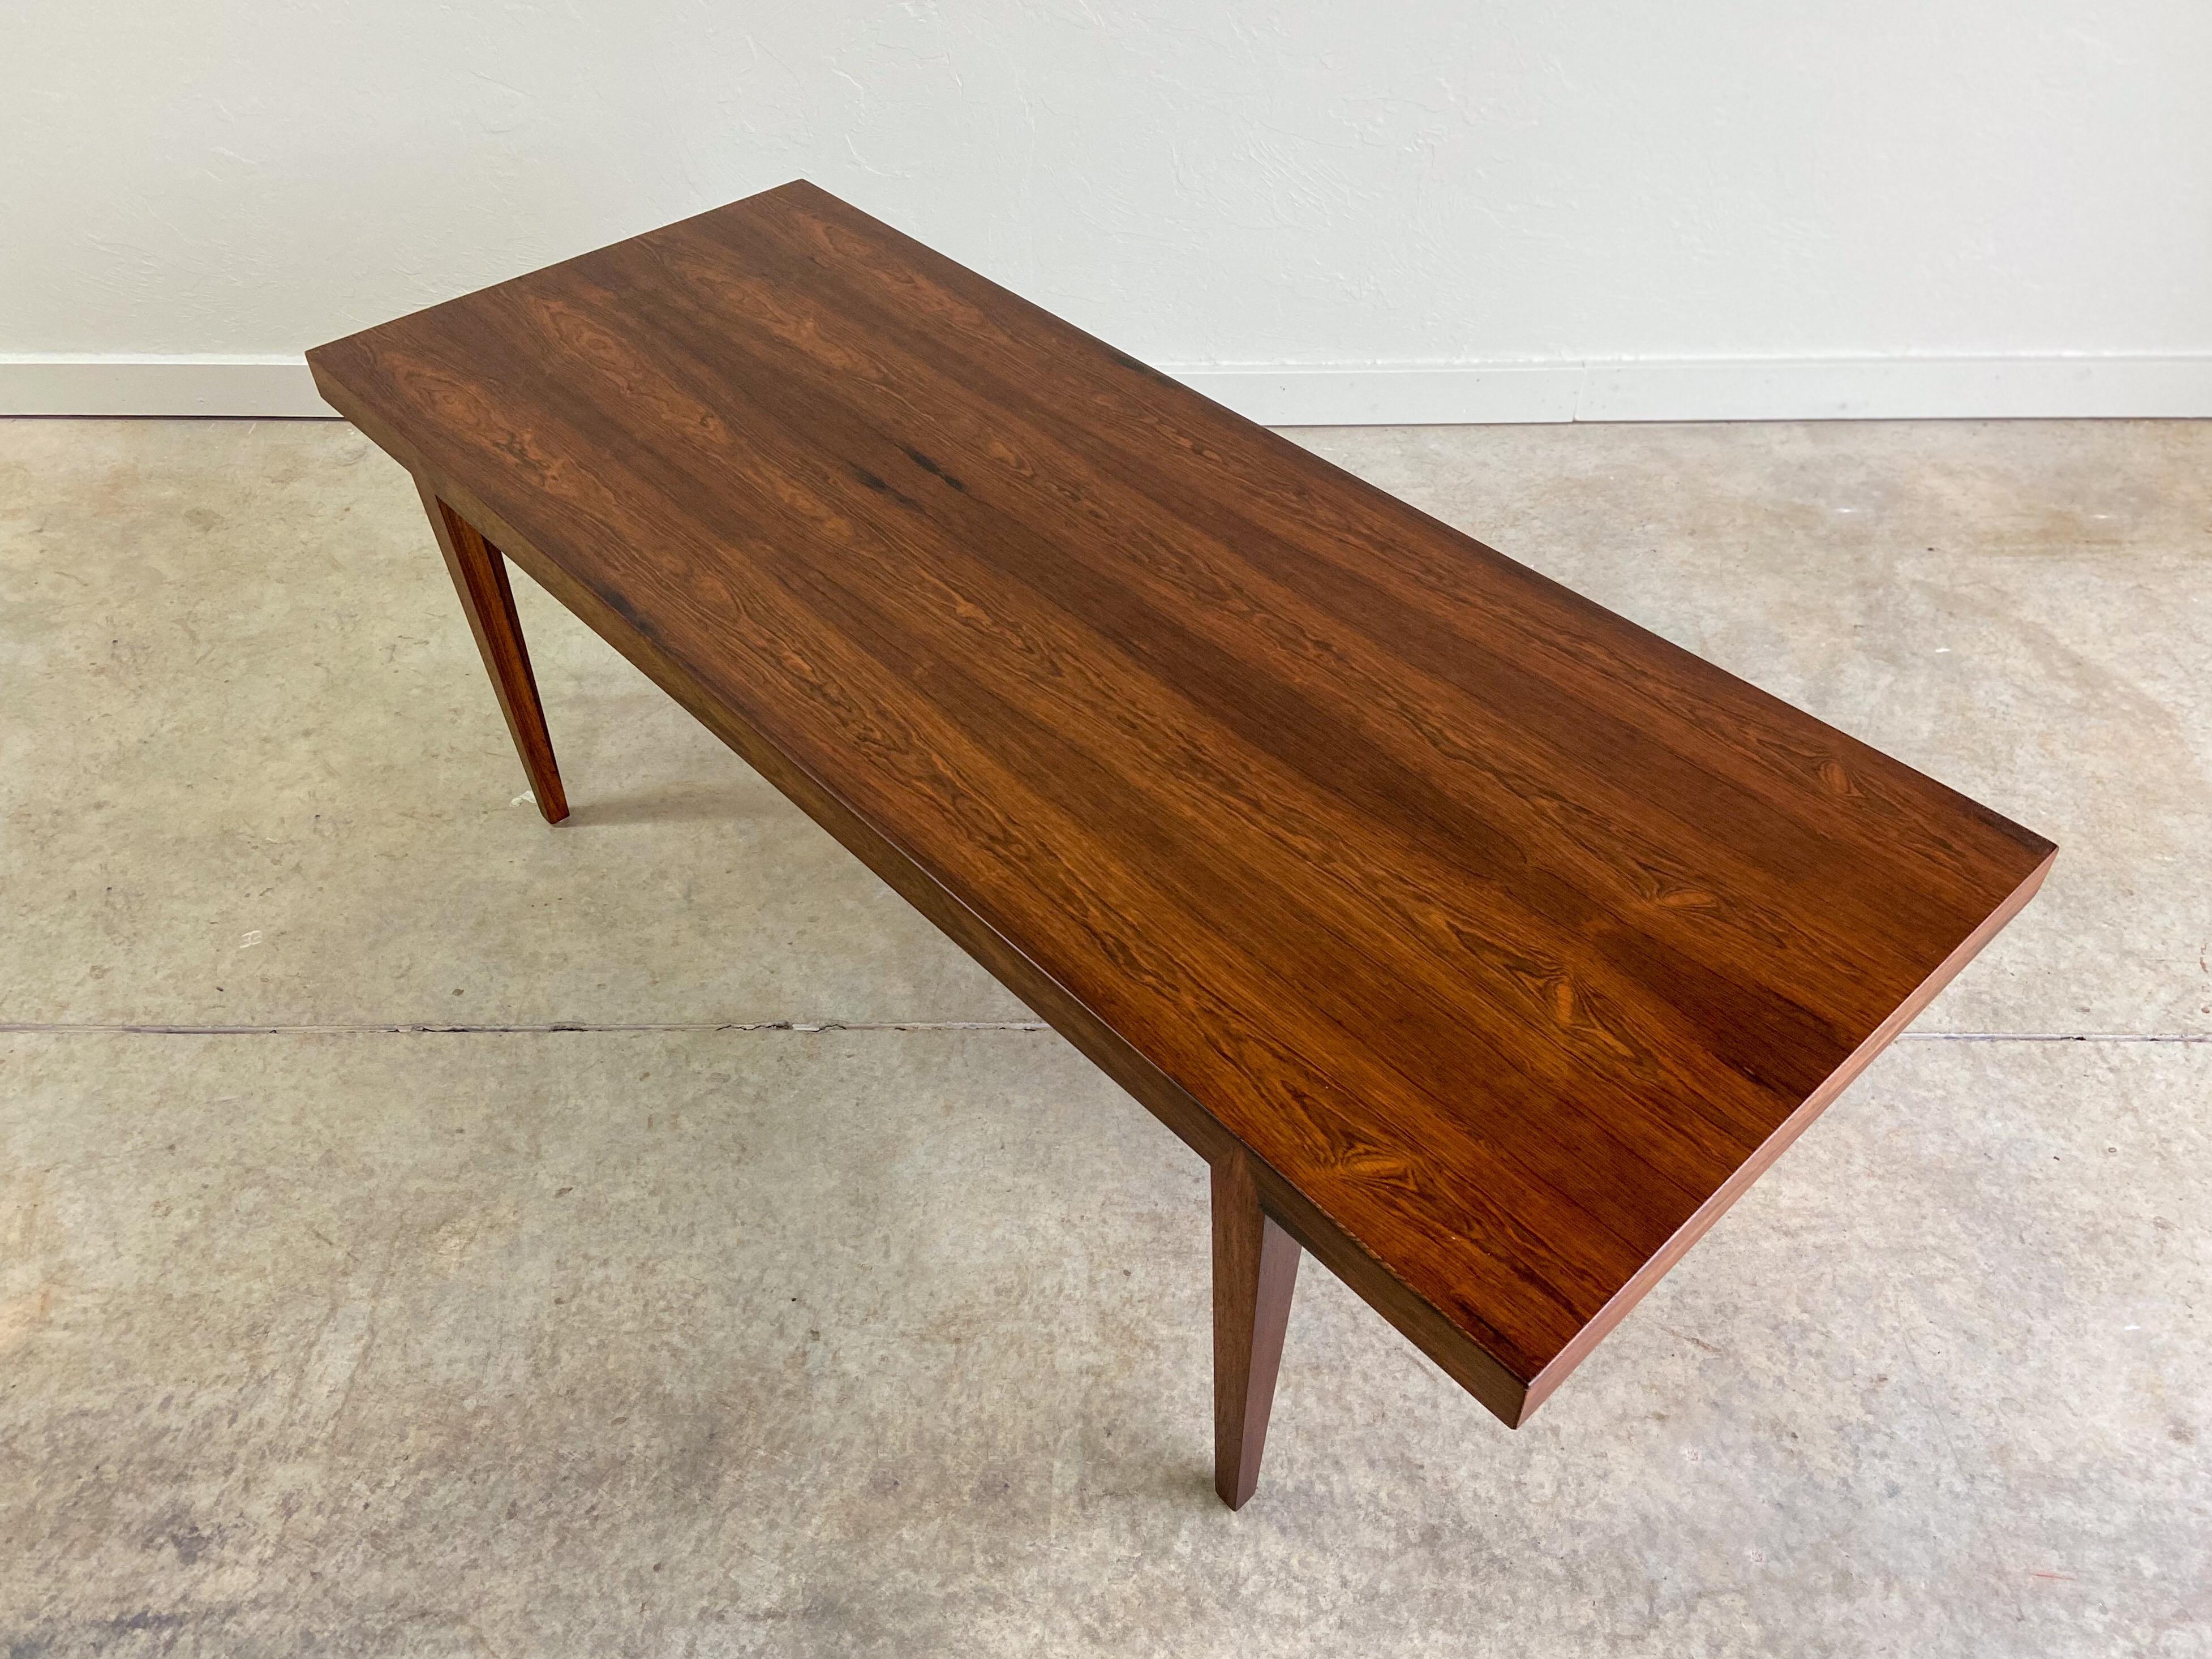 Ein Couchtisch aus Palisanderholz, entworfen von Severin Hansen. Ein großartiges Beispiel für minimalistisches, modernes dänisches Design. Der Tisch hat eine schöne Maserung und schöne Tischlerarbeiten.

Niedrigere Versandtarife verfügbar.